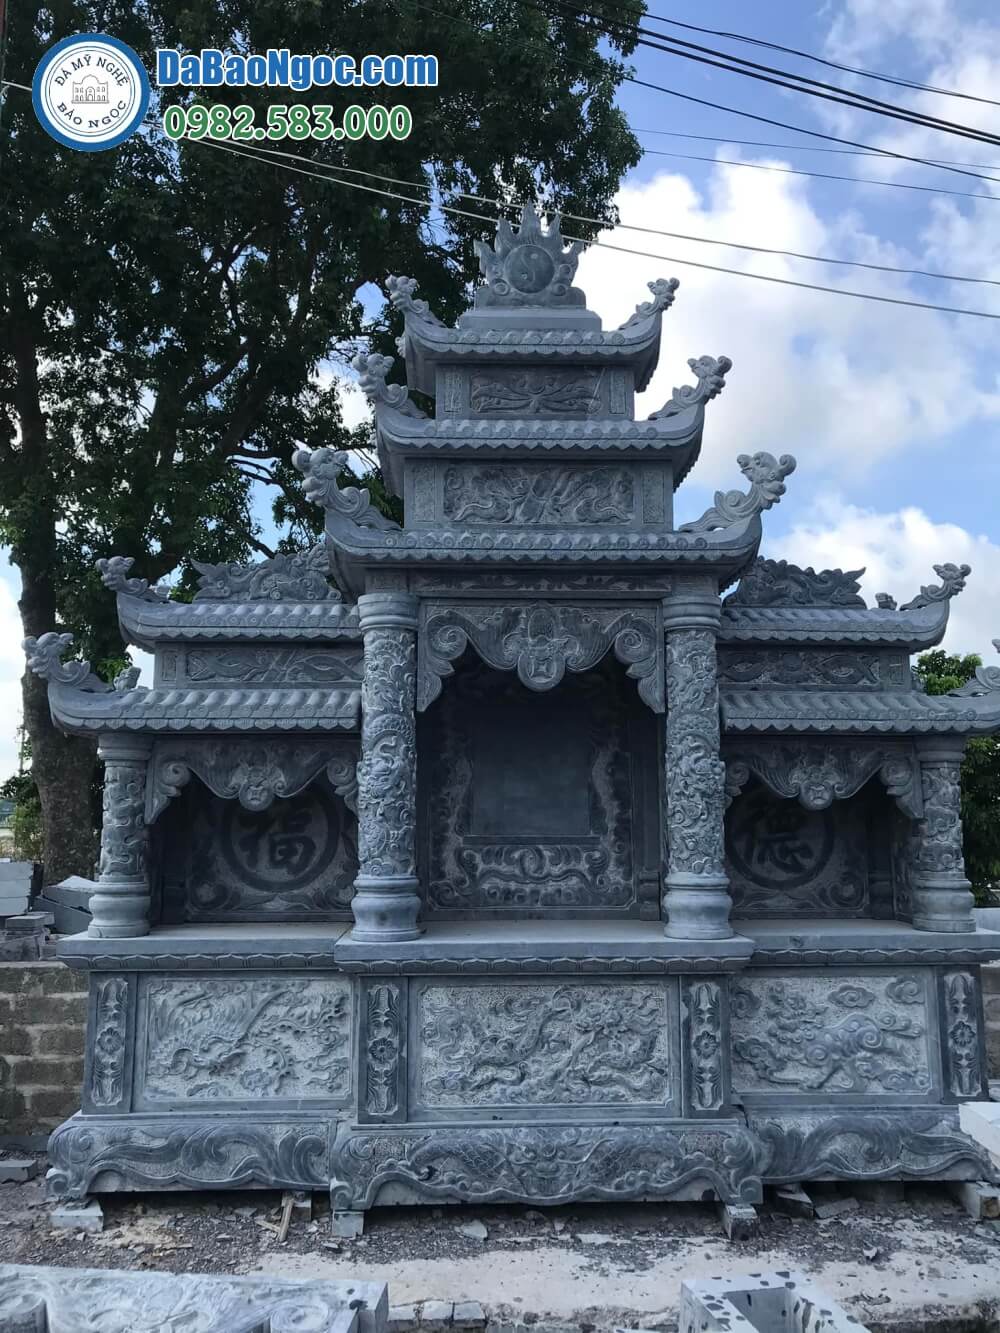 Bán và xây dựng, làm Lăng thờ đá ở Quảng Trị rẻ đẹp